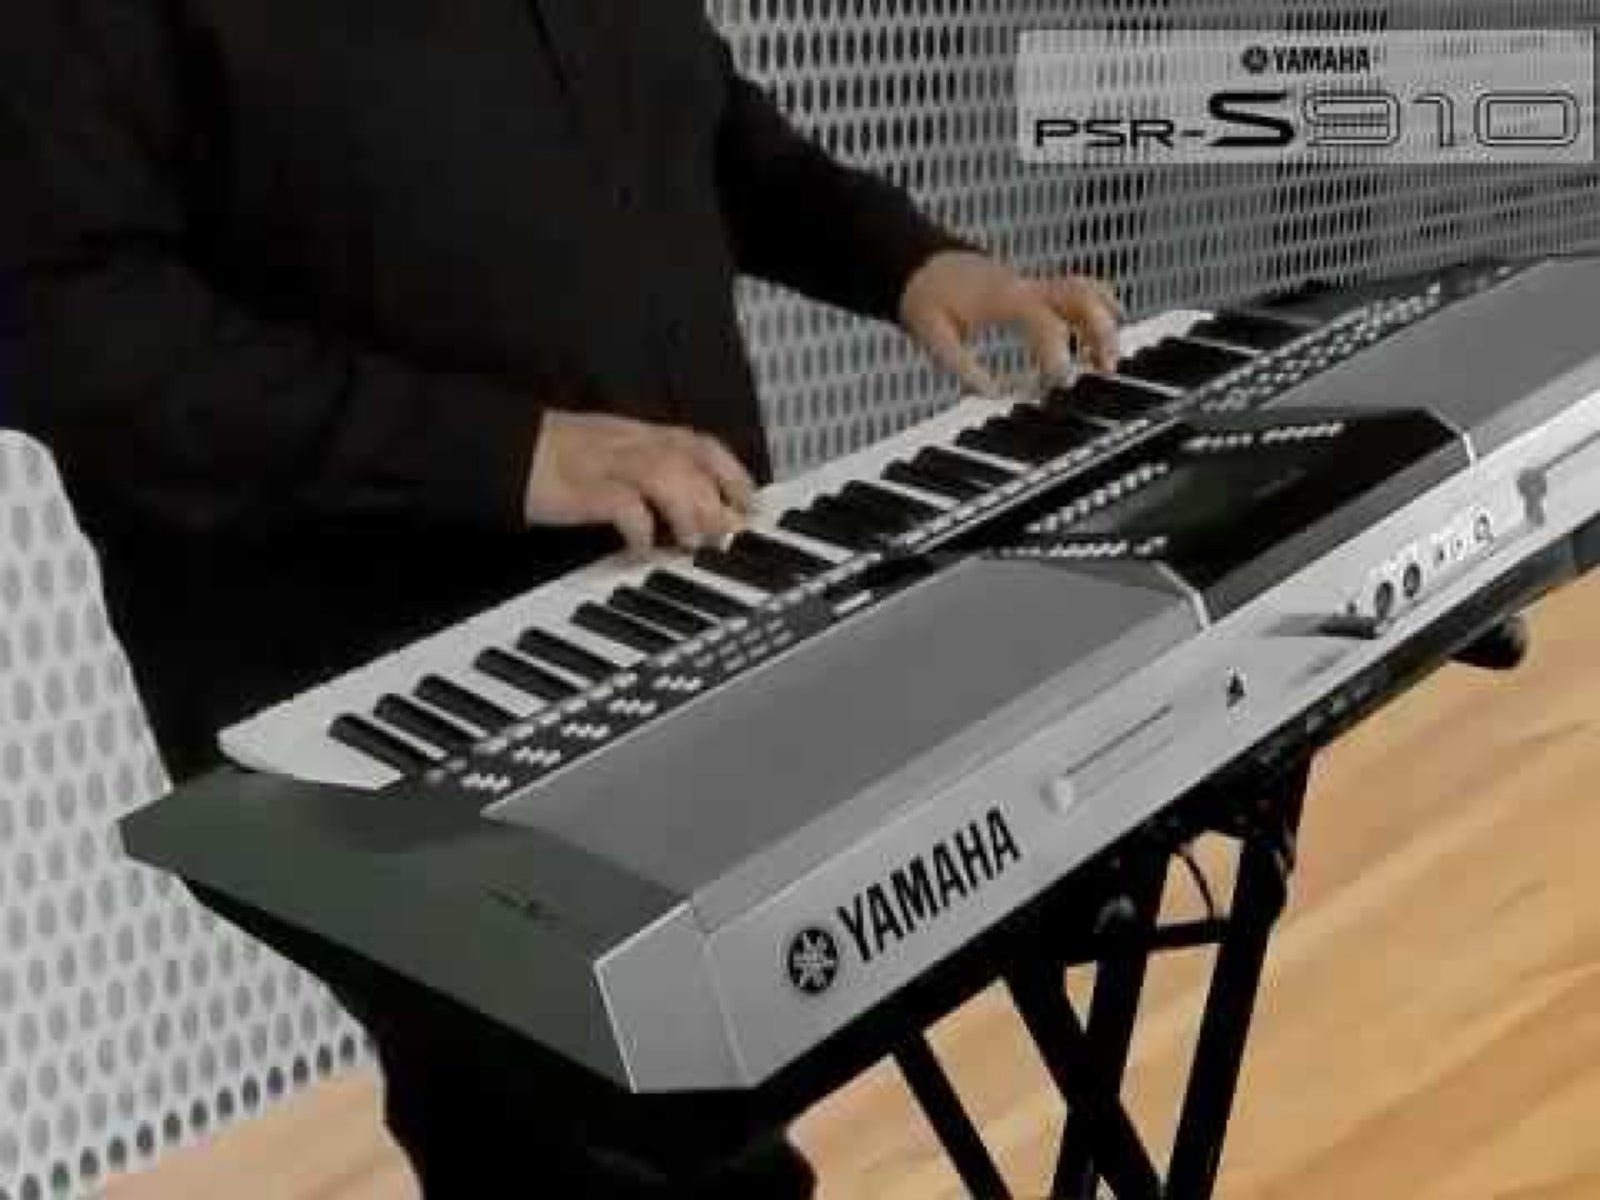 Keyboard, Yamaha Psr S710